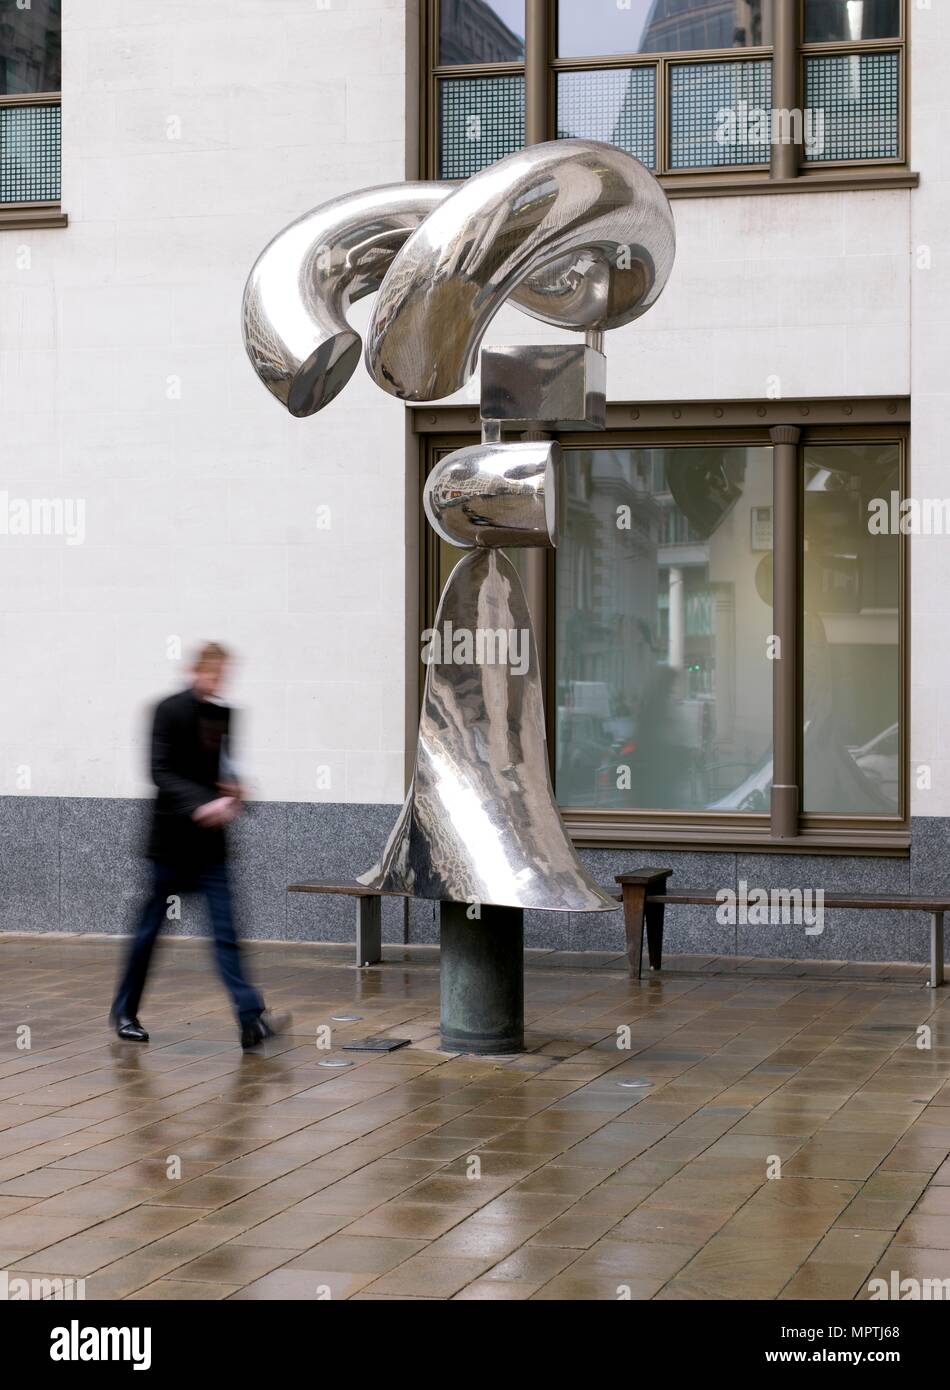 'Ritual, sculpture par Antanas Brazdys, Coleman Street, City of London, 2016. Artiste : Chris Redgrave. Banque D'Images